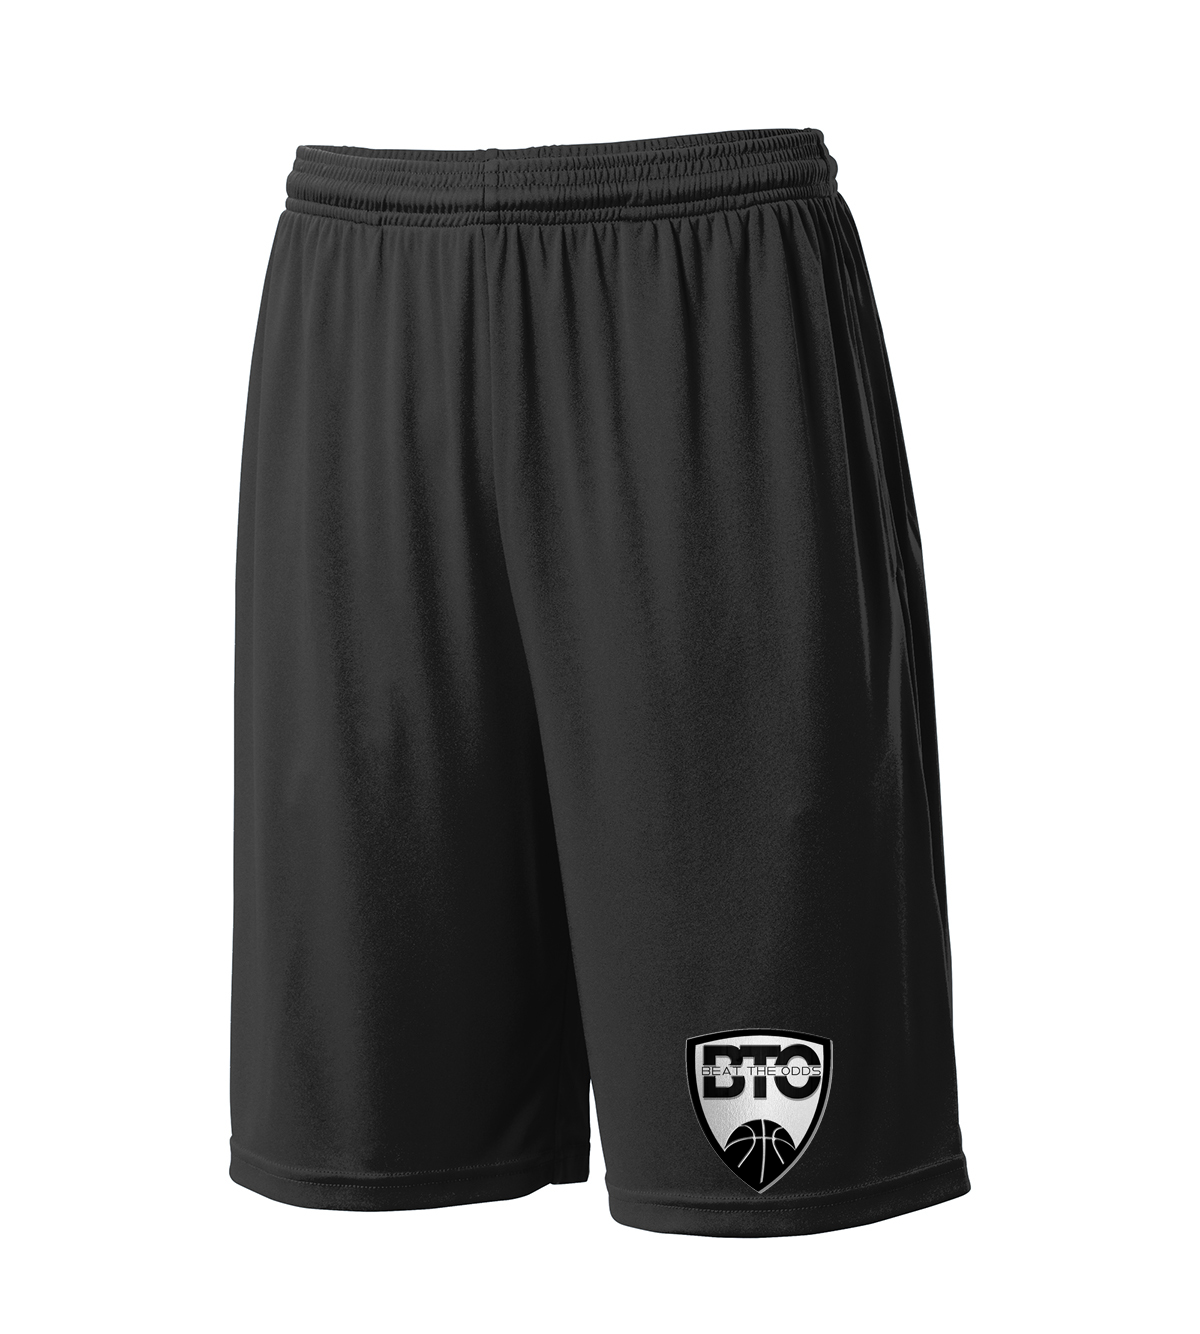 BTO Basketball Shorts